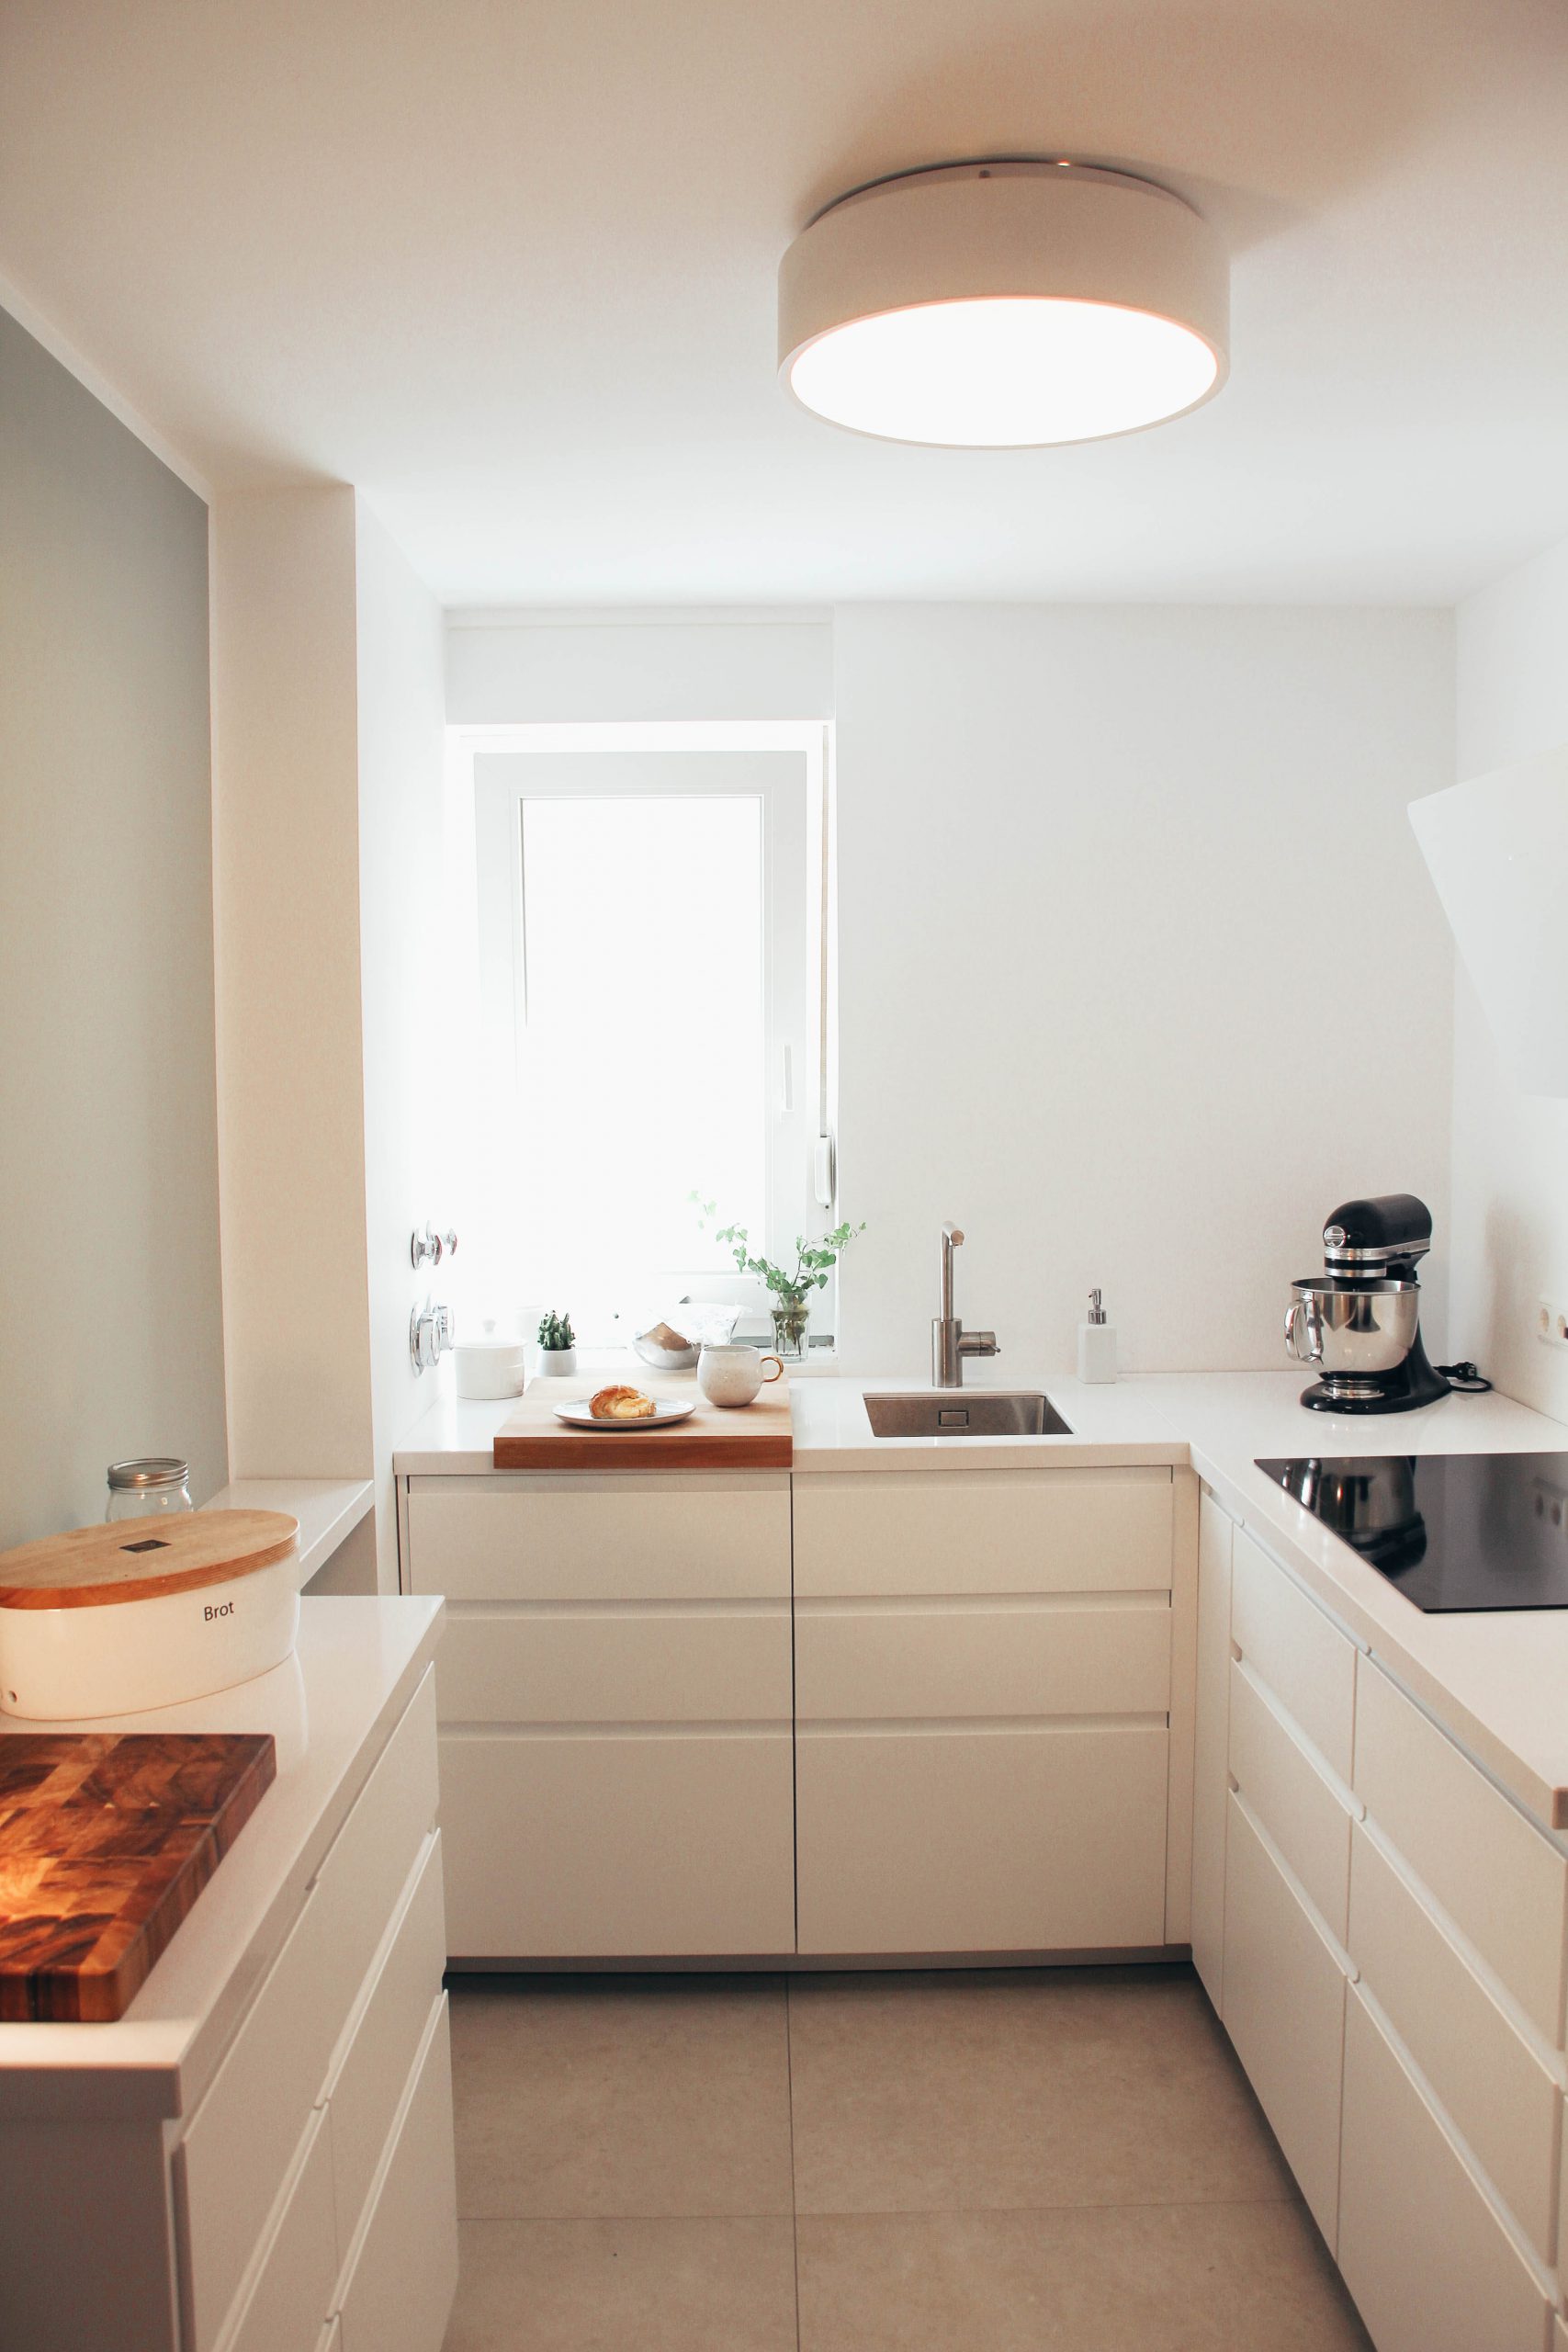 Unsere METOD-Küche von IKEA – Tipps zur Küchenplanung - maxistories